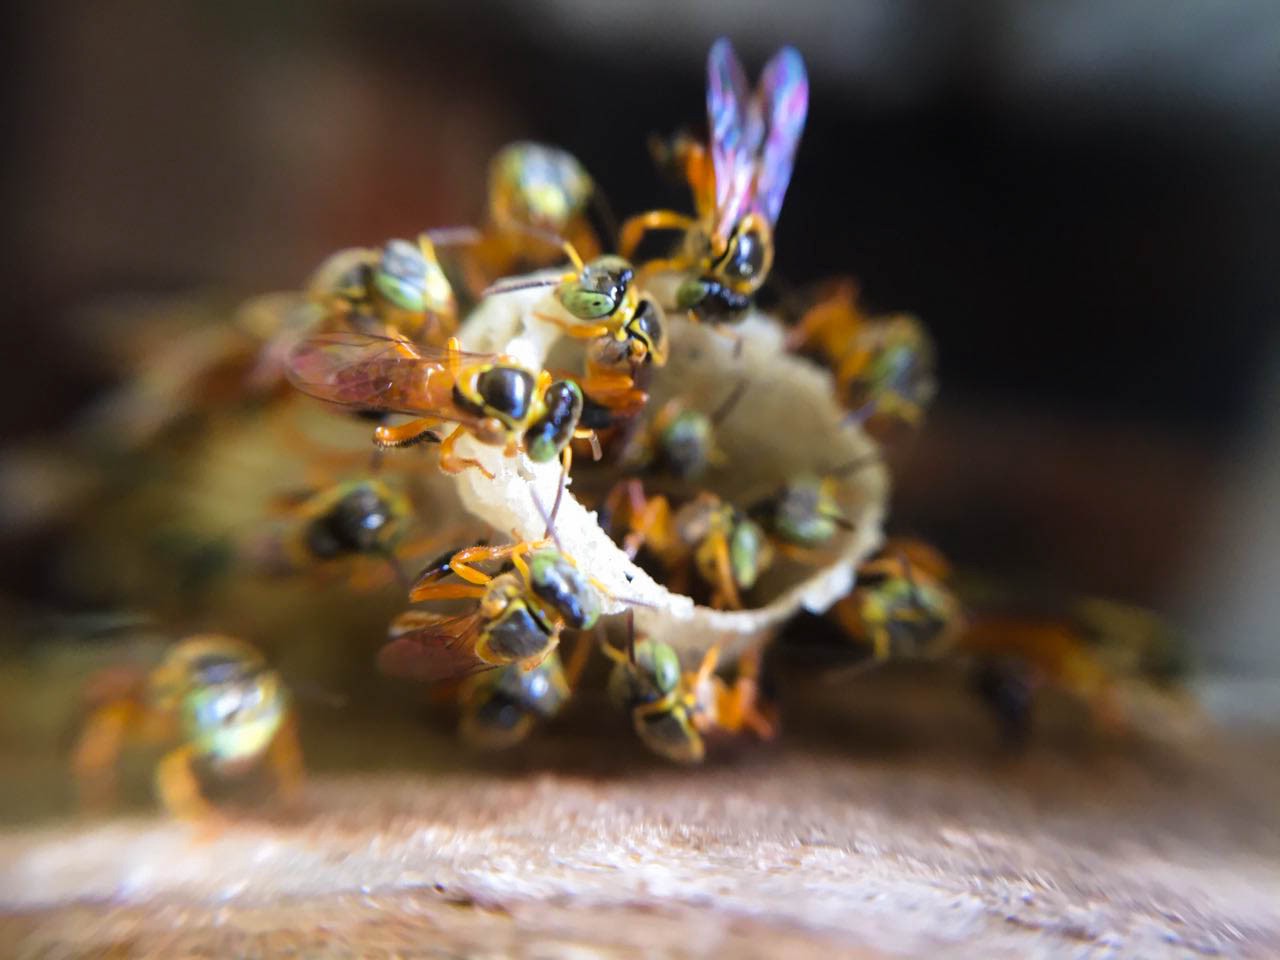 Corredor ecológico vai ajudar a preservar abelhas nativas no DF